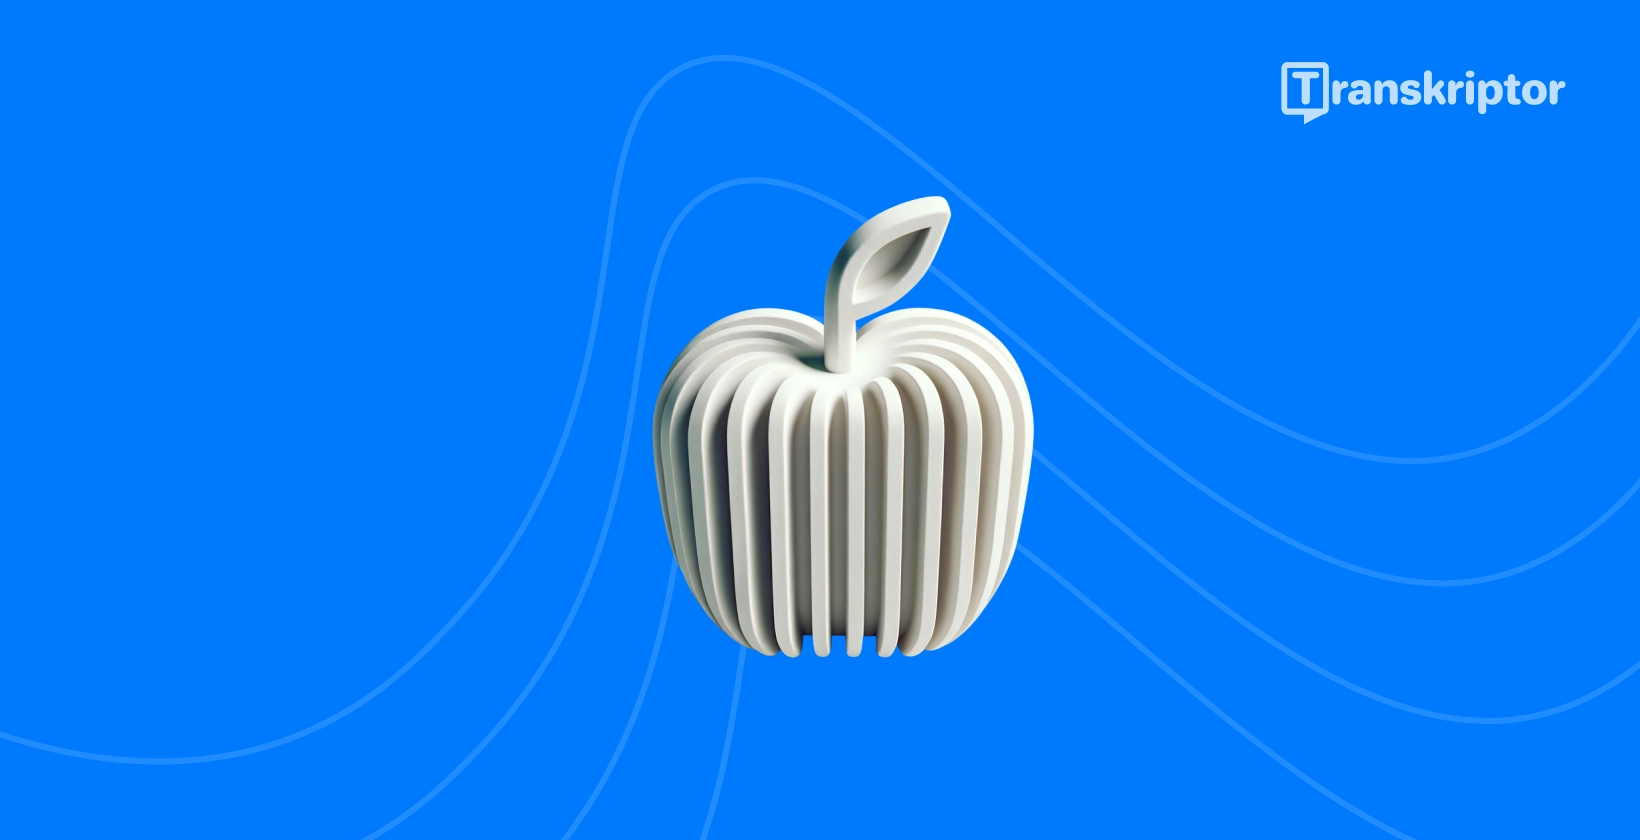 Stilizovana jabuka sa zvučnim talasima predstavlja vrhunske aplikacije za transkripciju koje su dostupne iPhone korisnicima.